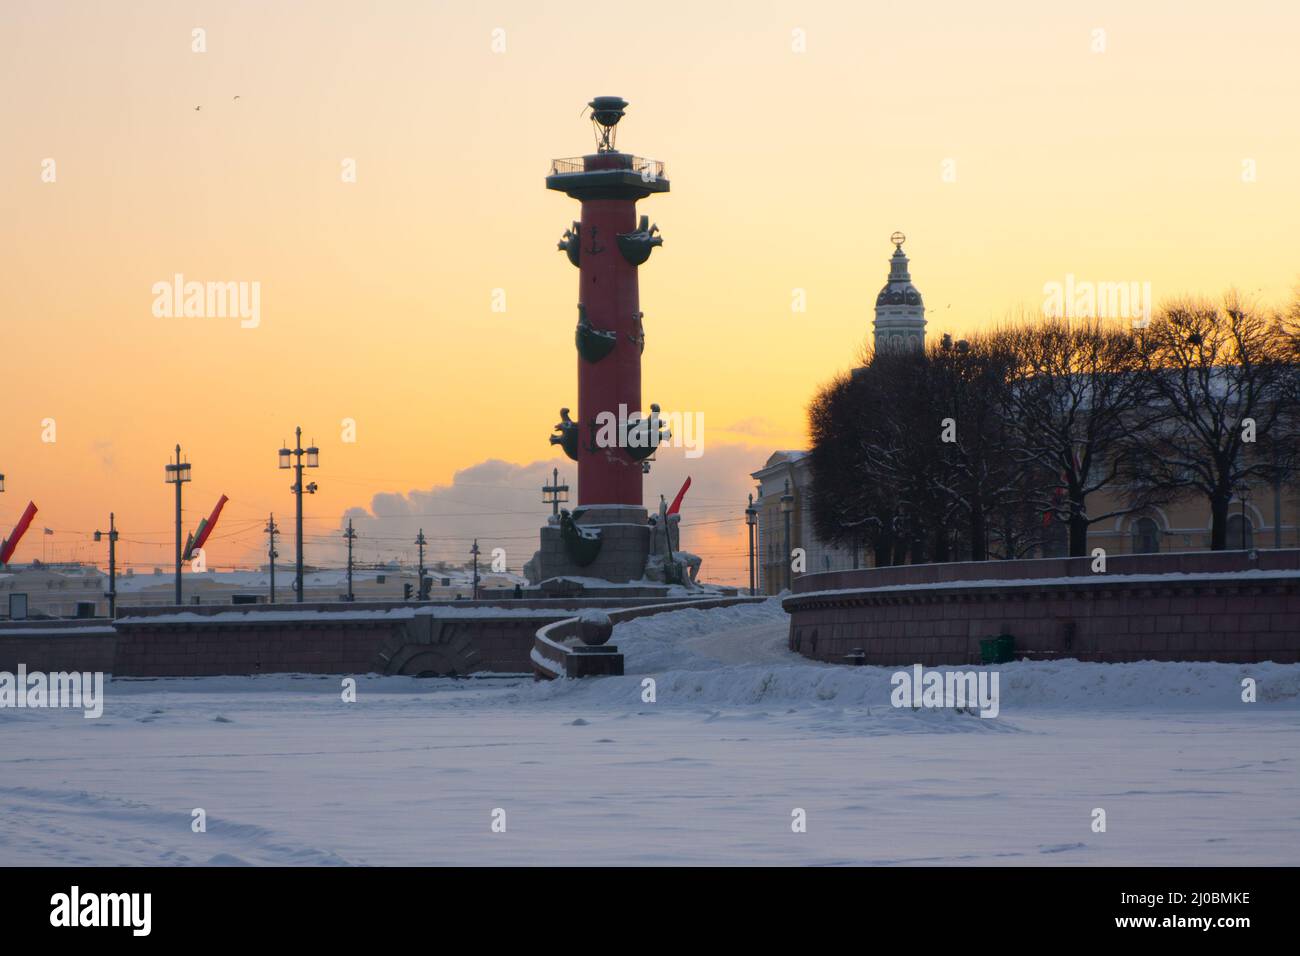 Russie. Saint-Pétersbourg. Hiver. Colonne rostrale et curiosités au coucher du soleil Banque D'Images